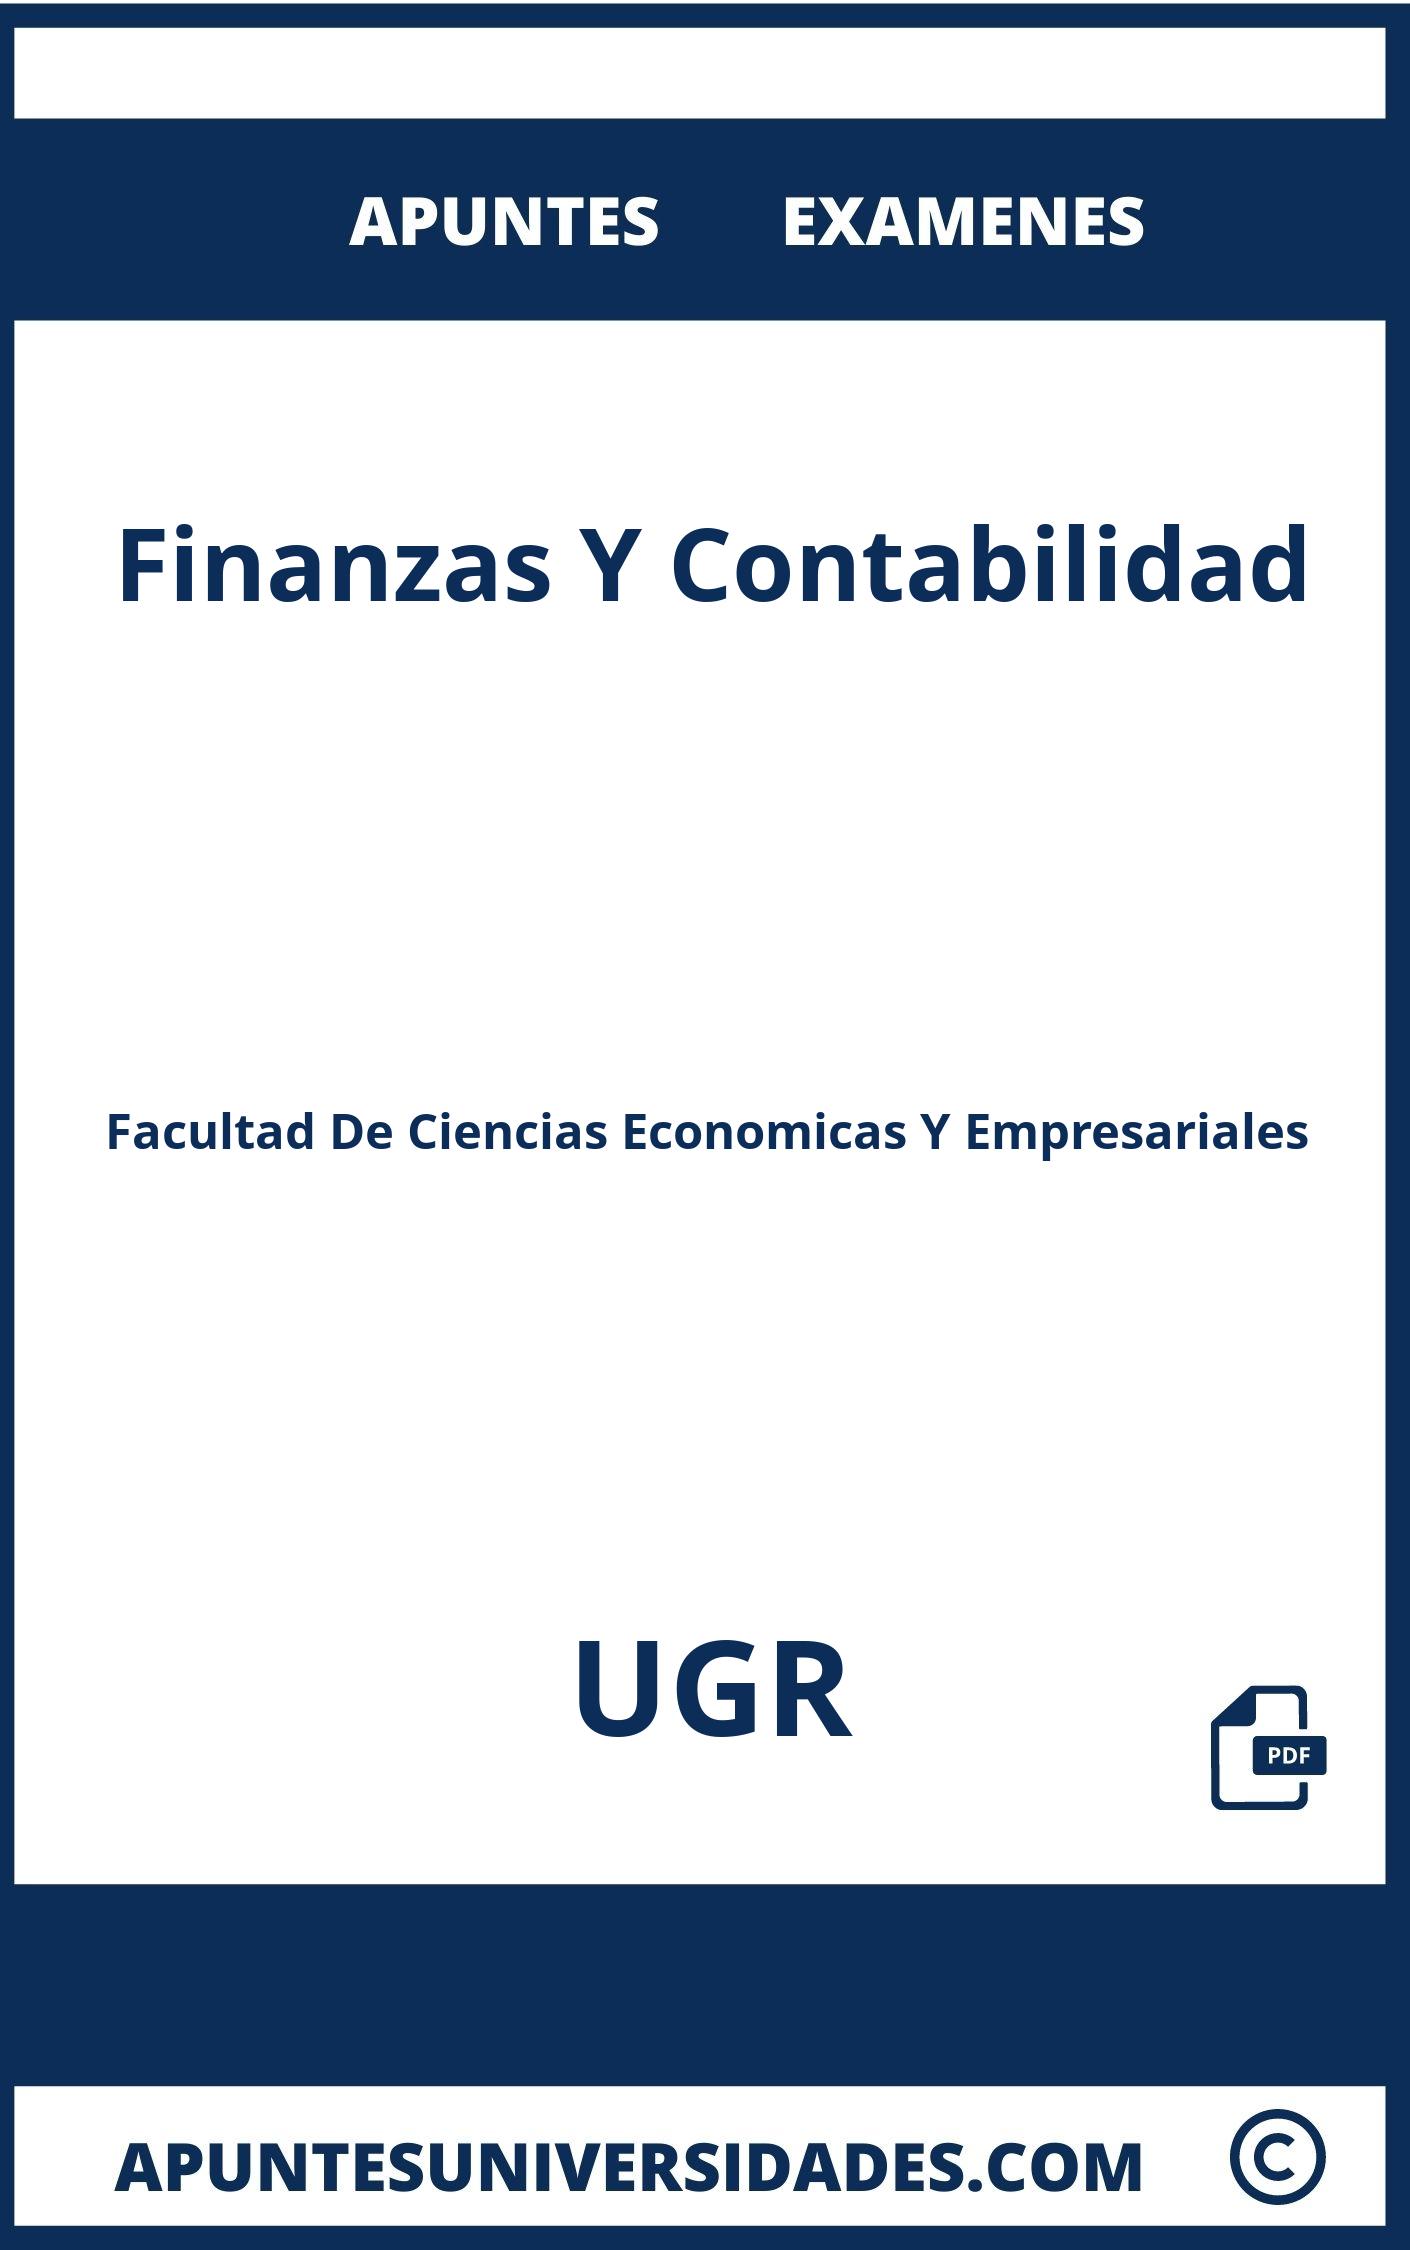 Examenes y Apuntes Finanzas Y Contabilidad UGR